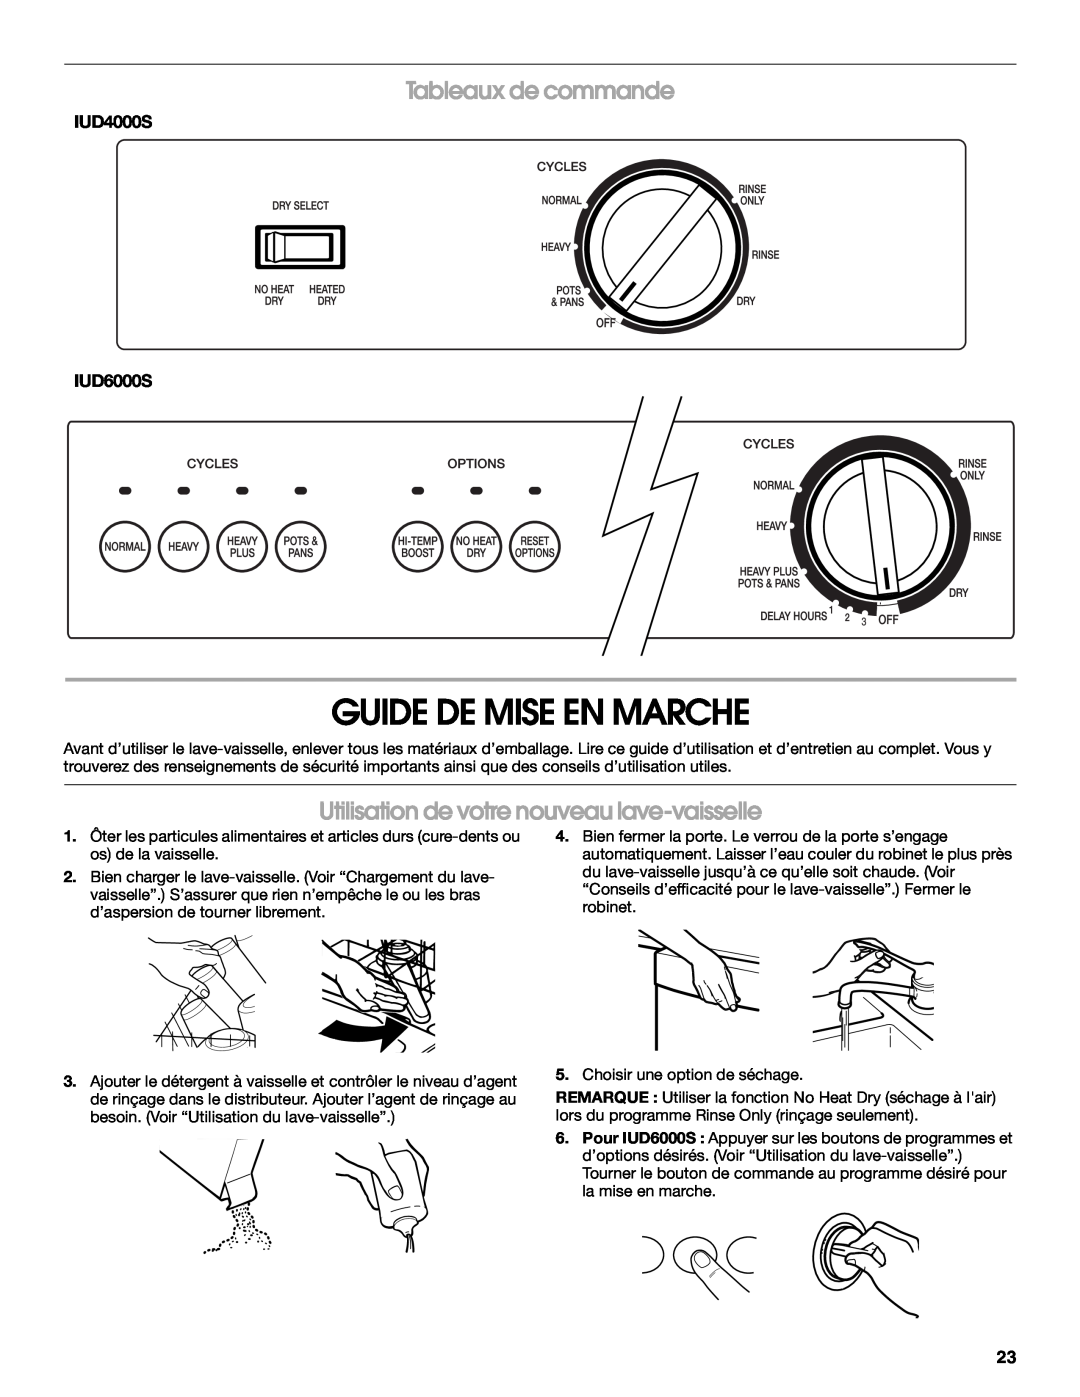 IKEA IUD6000S, IUD4000S manual Guide De Mise En Marche, Tableaux de commande, Utilisation de votre nouveau lave-vaisselle 